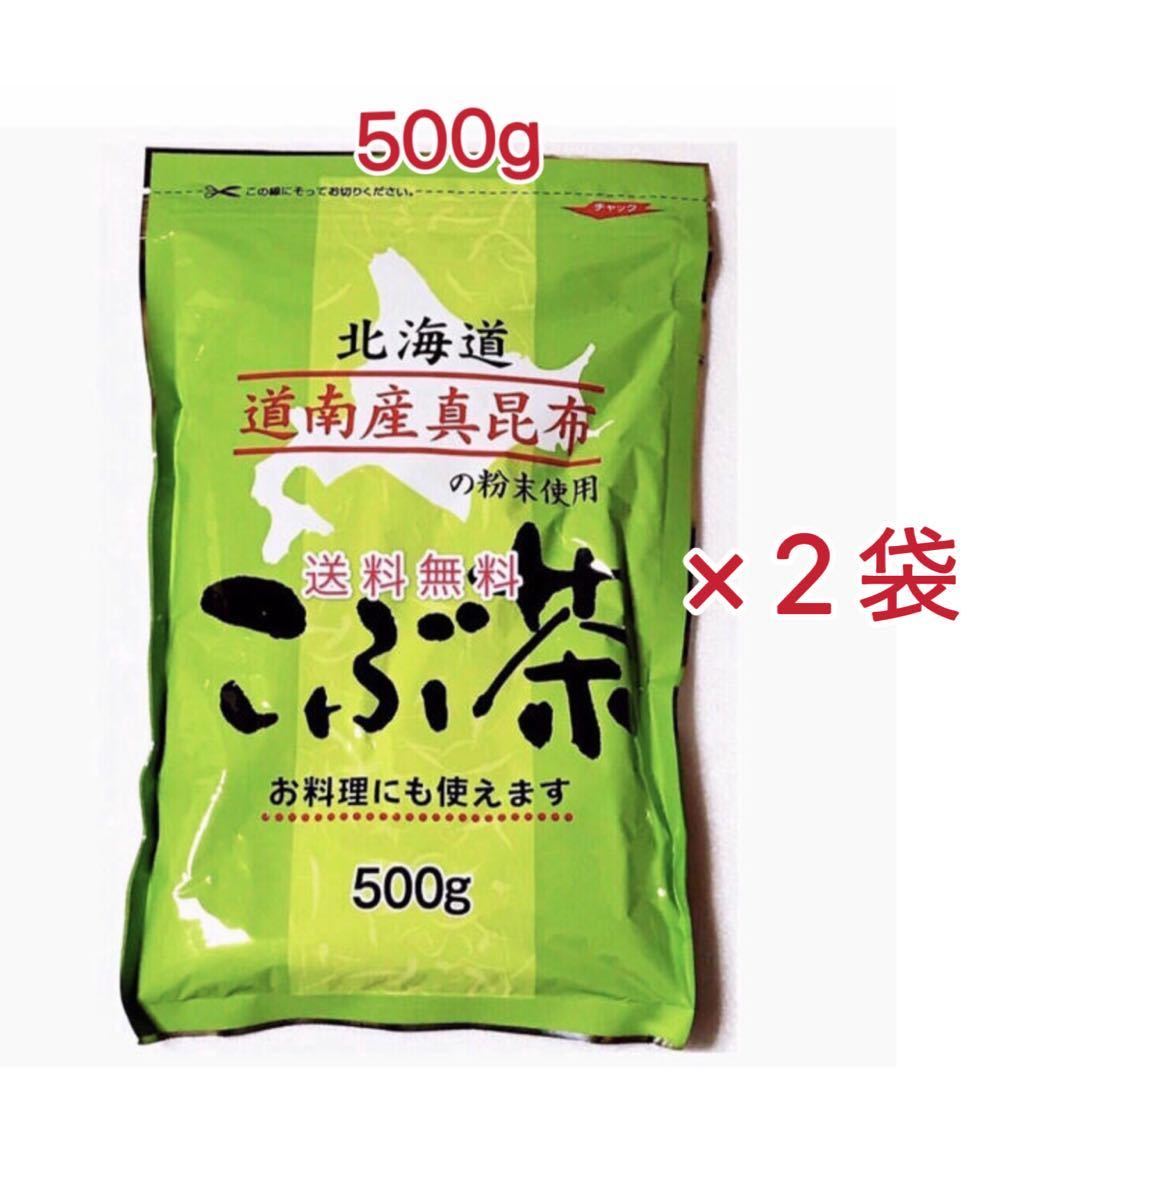 昆布茶 500g×2袋 1kg 北海道道南産真昆布 送料無料 無料配達 1kg